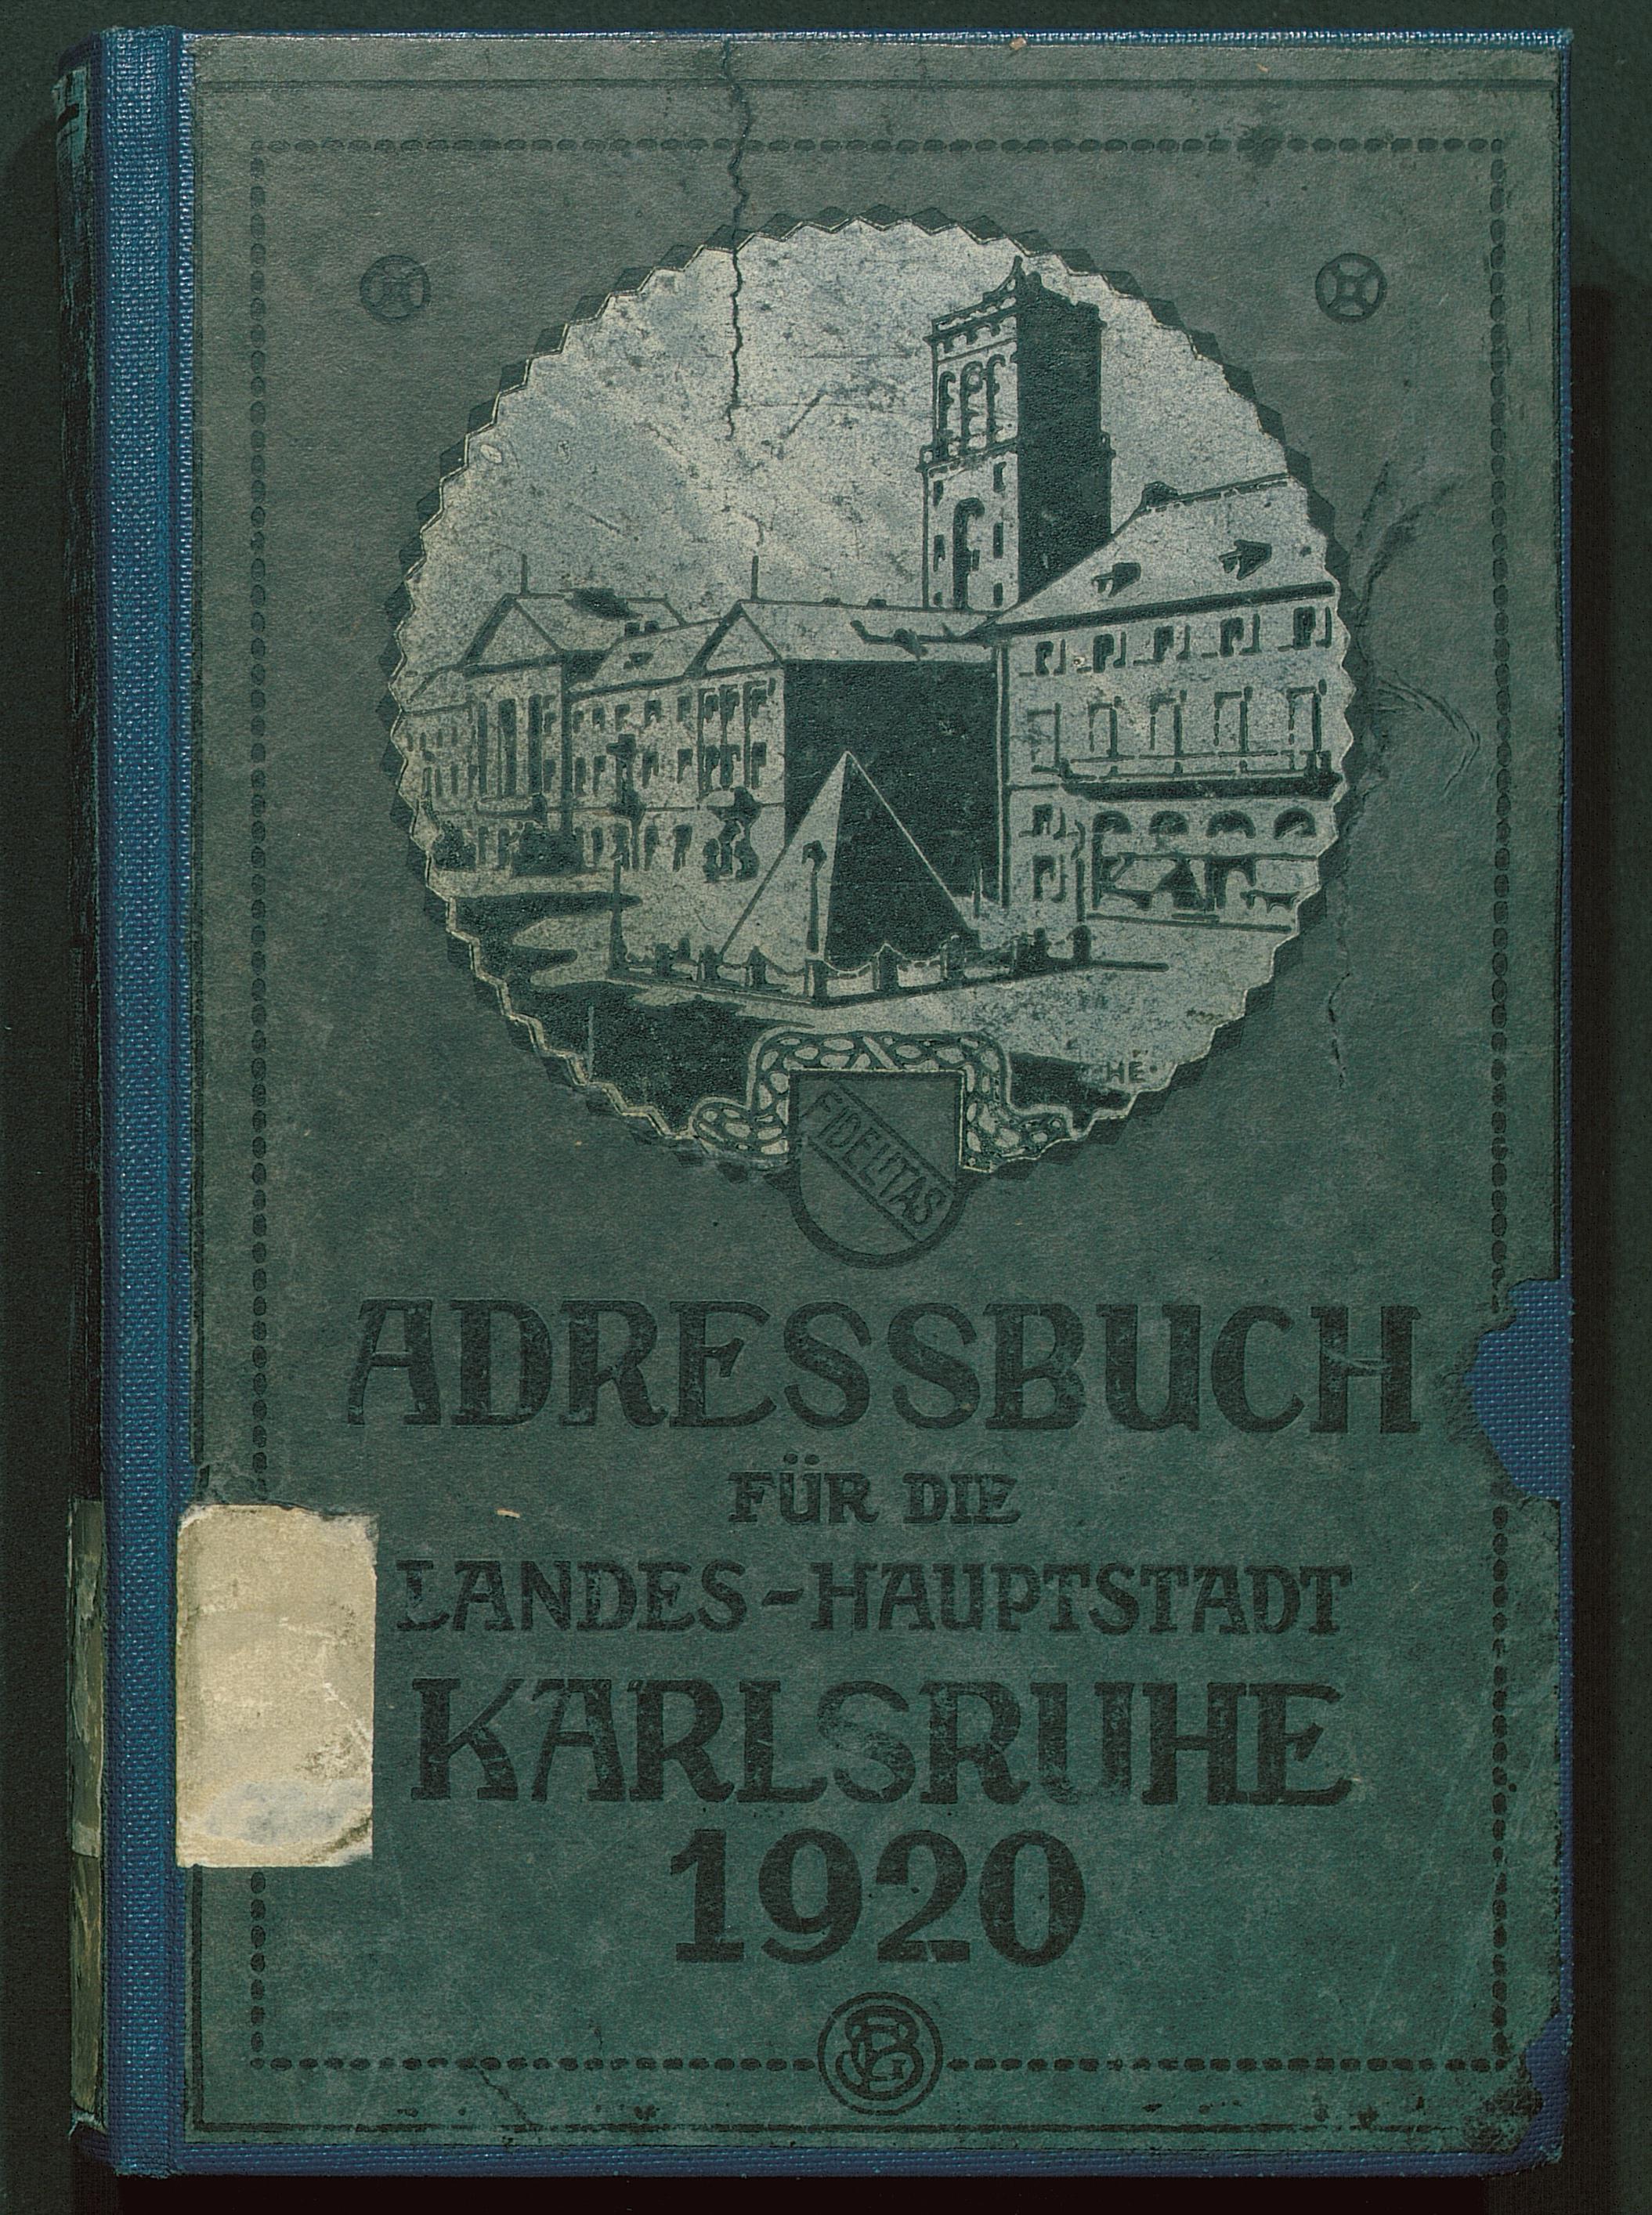 Adressbuch der Landeshauptstadt Karlsruhe 1920